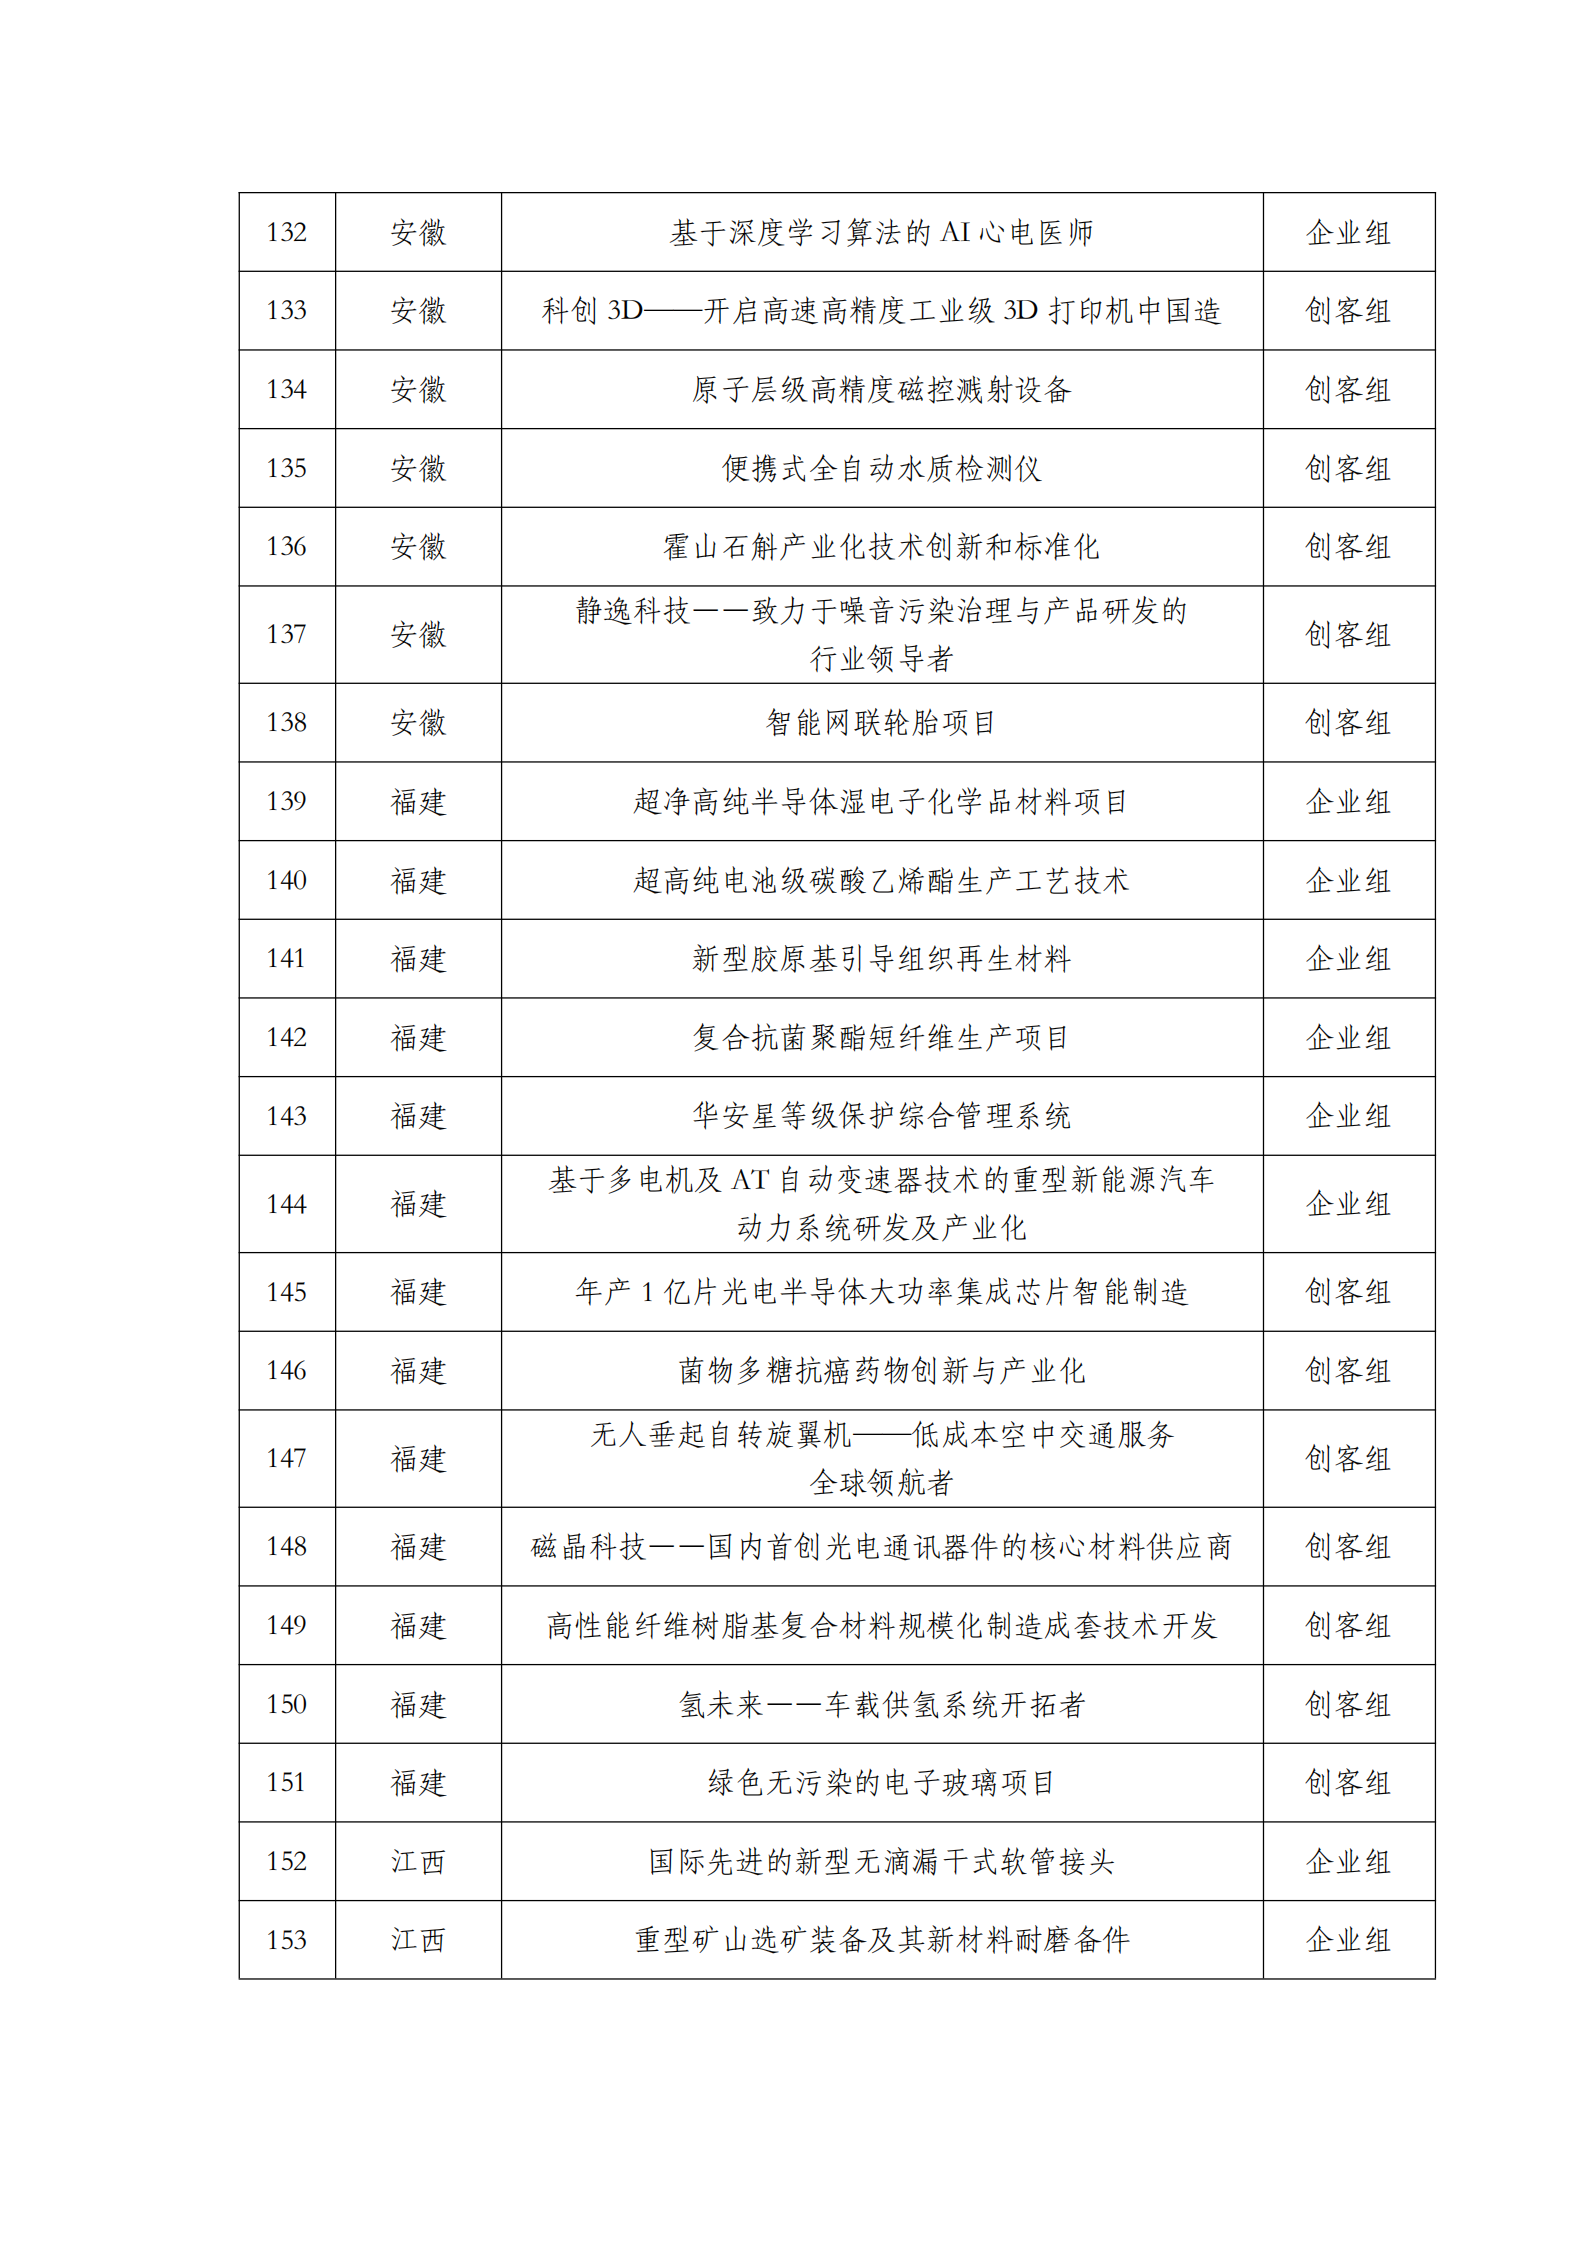 第六届“创客中国”中小企业创新创业大赛500强公示名单_06.png